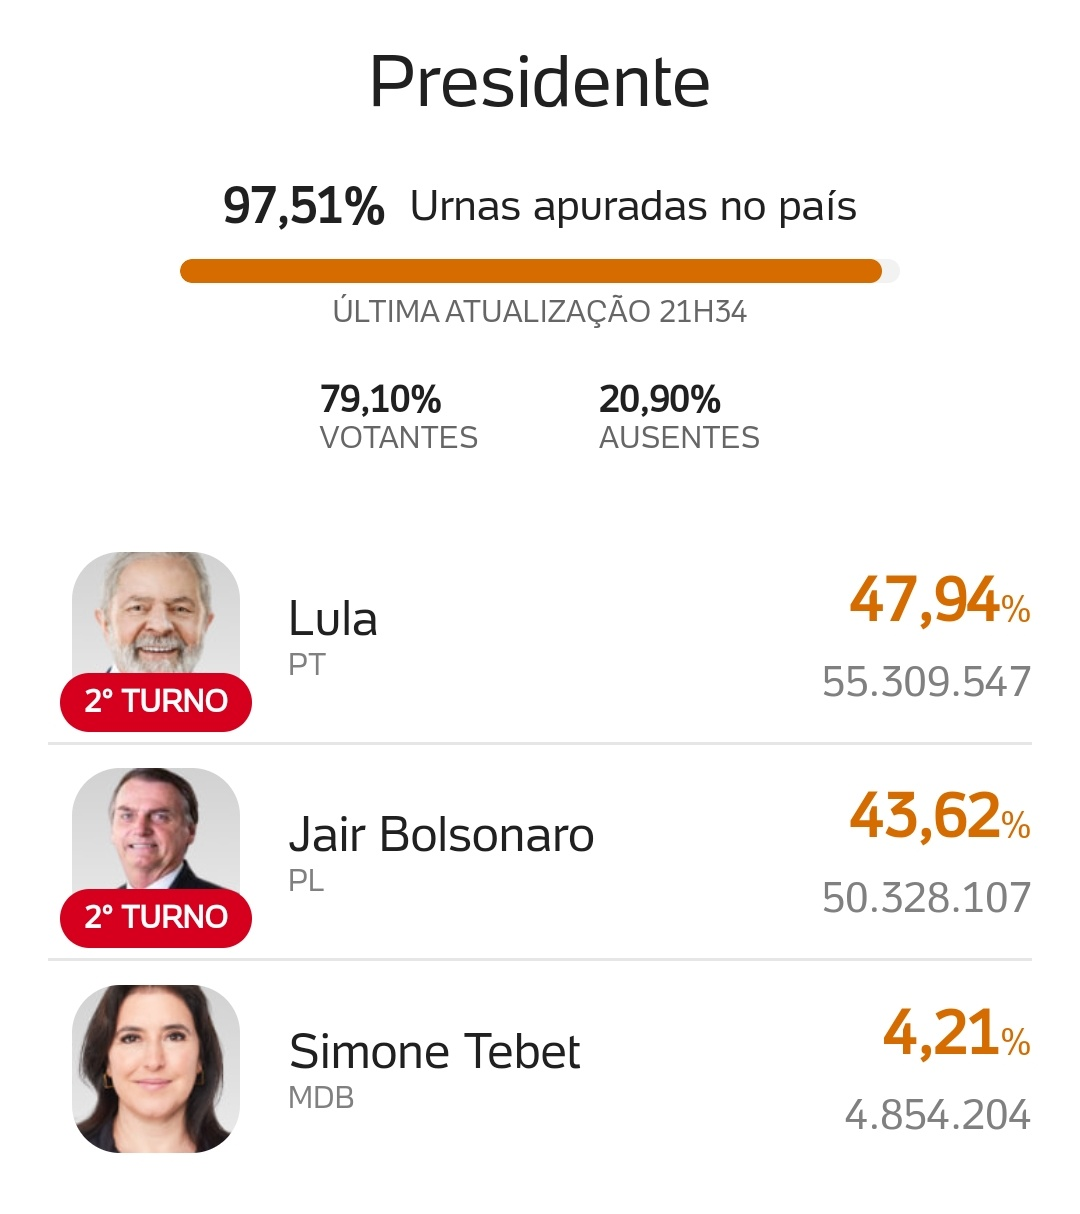 انتخابات برزیل به دور دوم کشیده شد